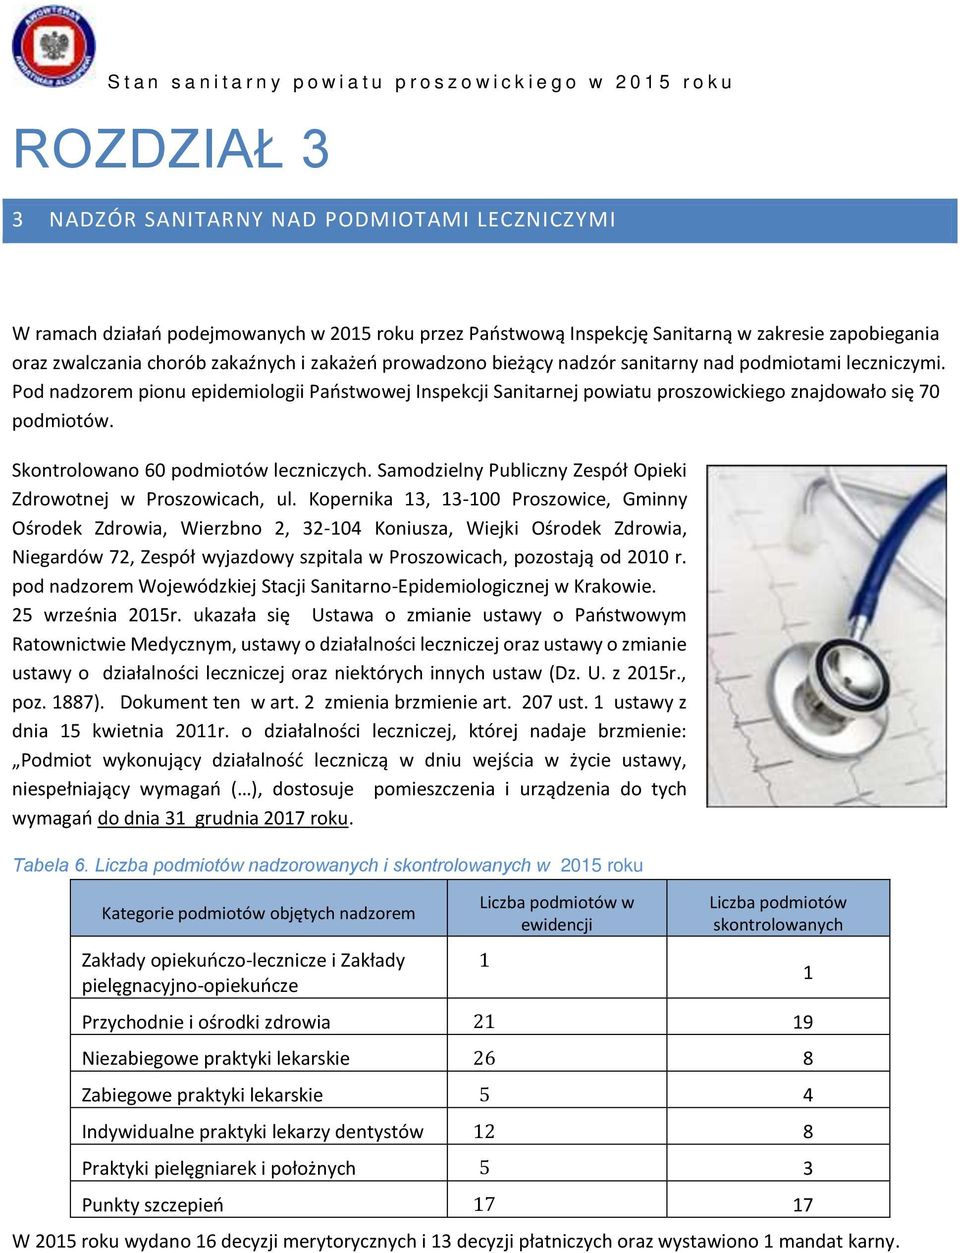 Skontrolowano 60 podmiotów leczniczych. Samodzielny Publiczny Zespół Opieki Zdrowotnej w Proszowicach, ul.